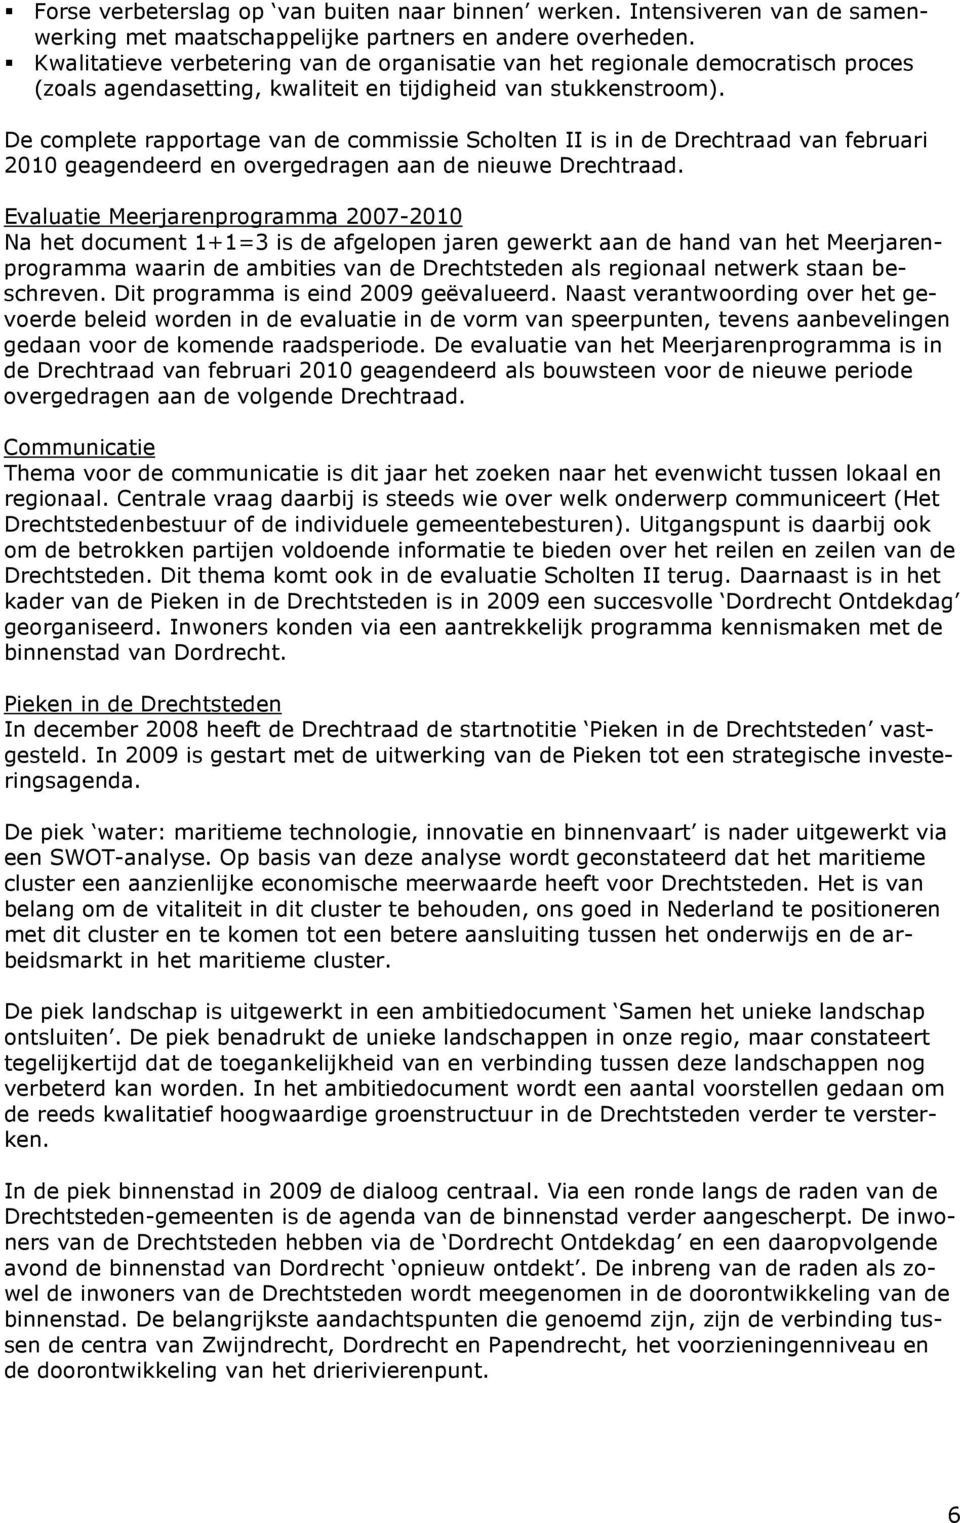 De complete rapportage van de commissie Scholten II is in de Drechtraad van februari 2010 geagendeerd en overgedragen aan de nieuwe Drechtraad.